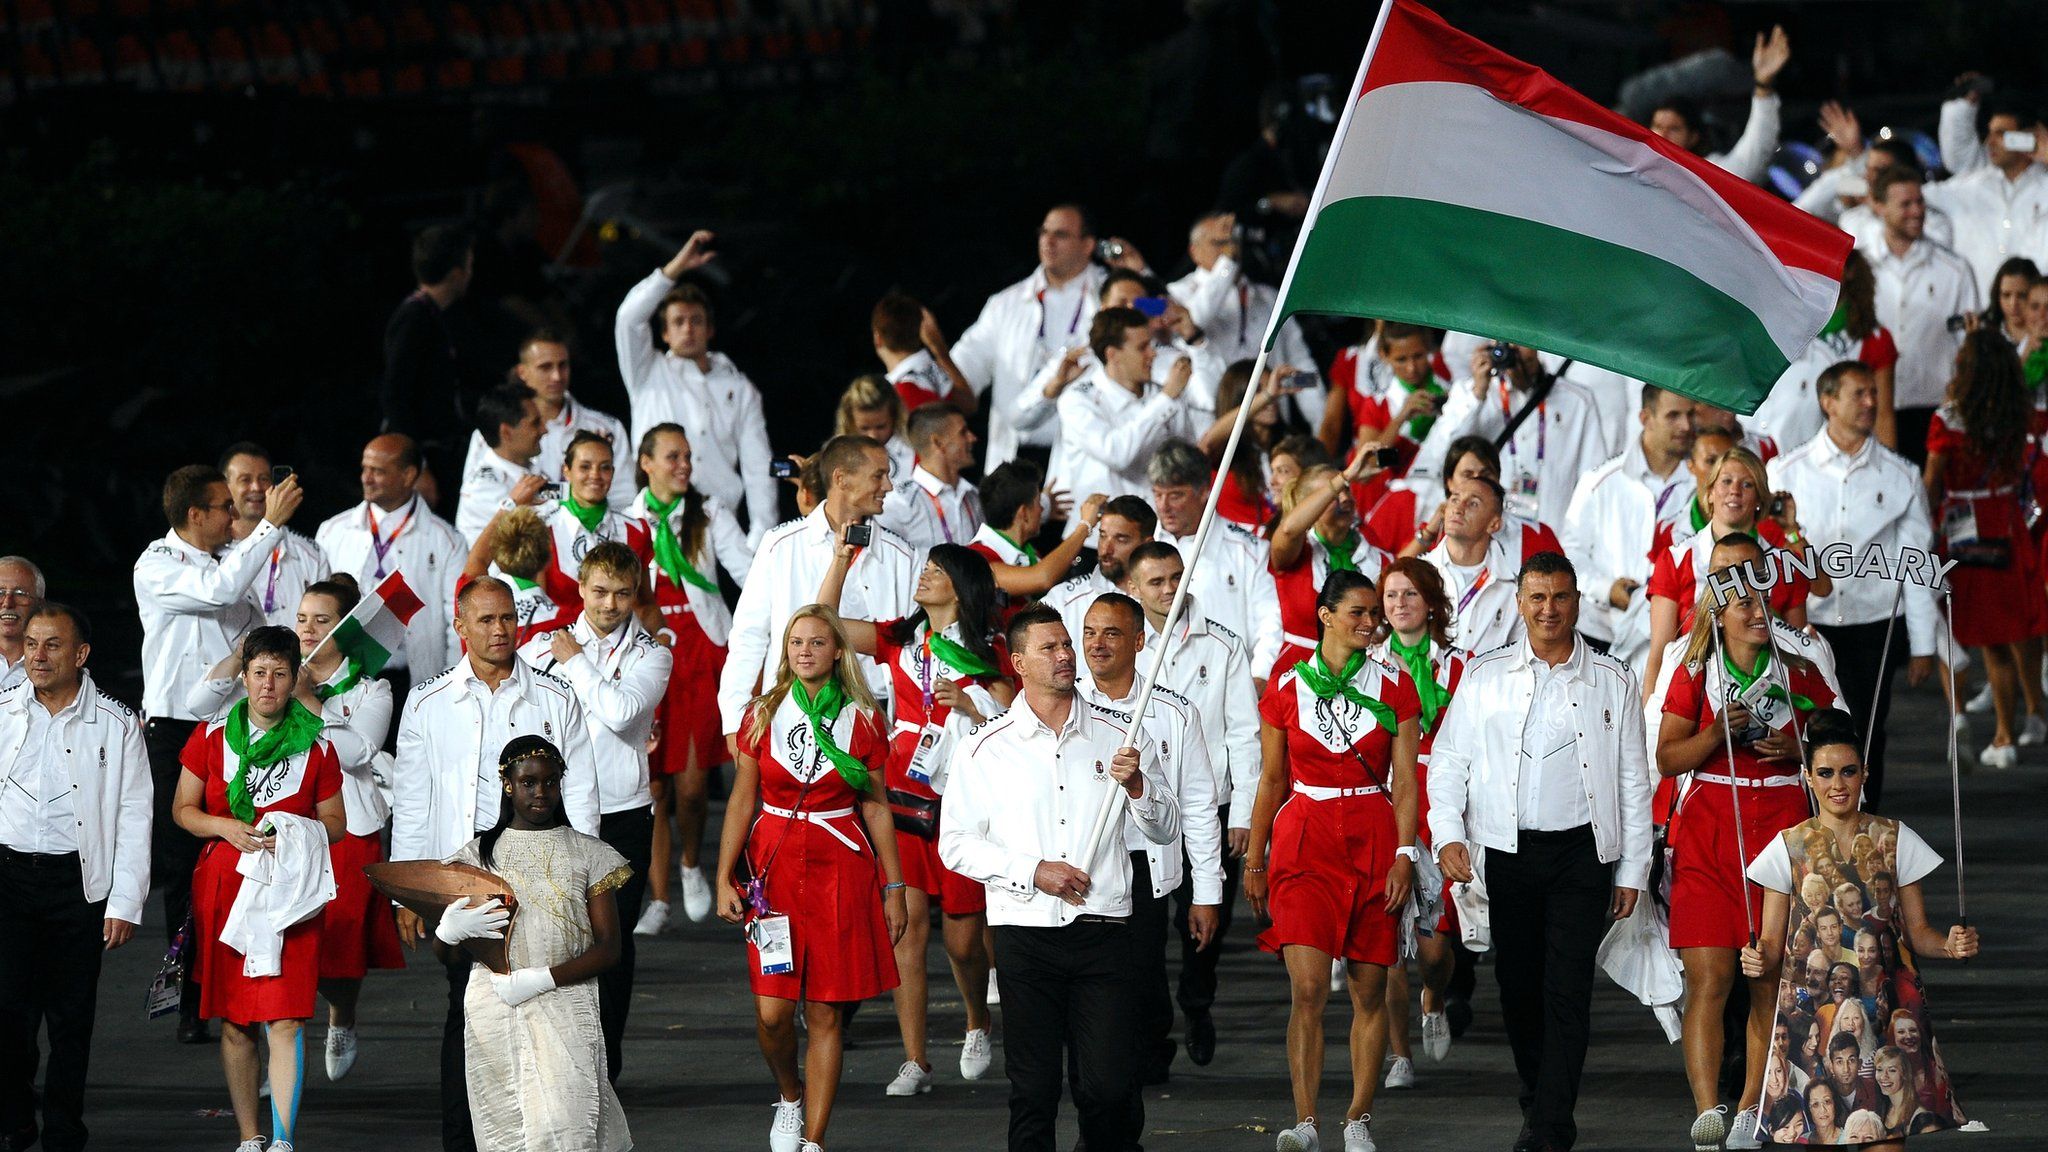 Hungary athletes at London 2012